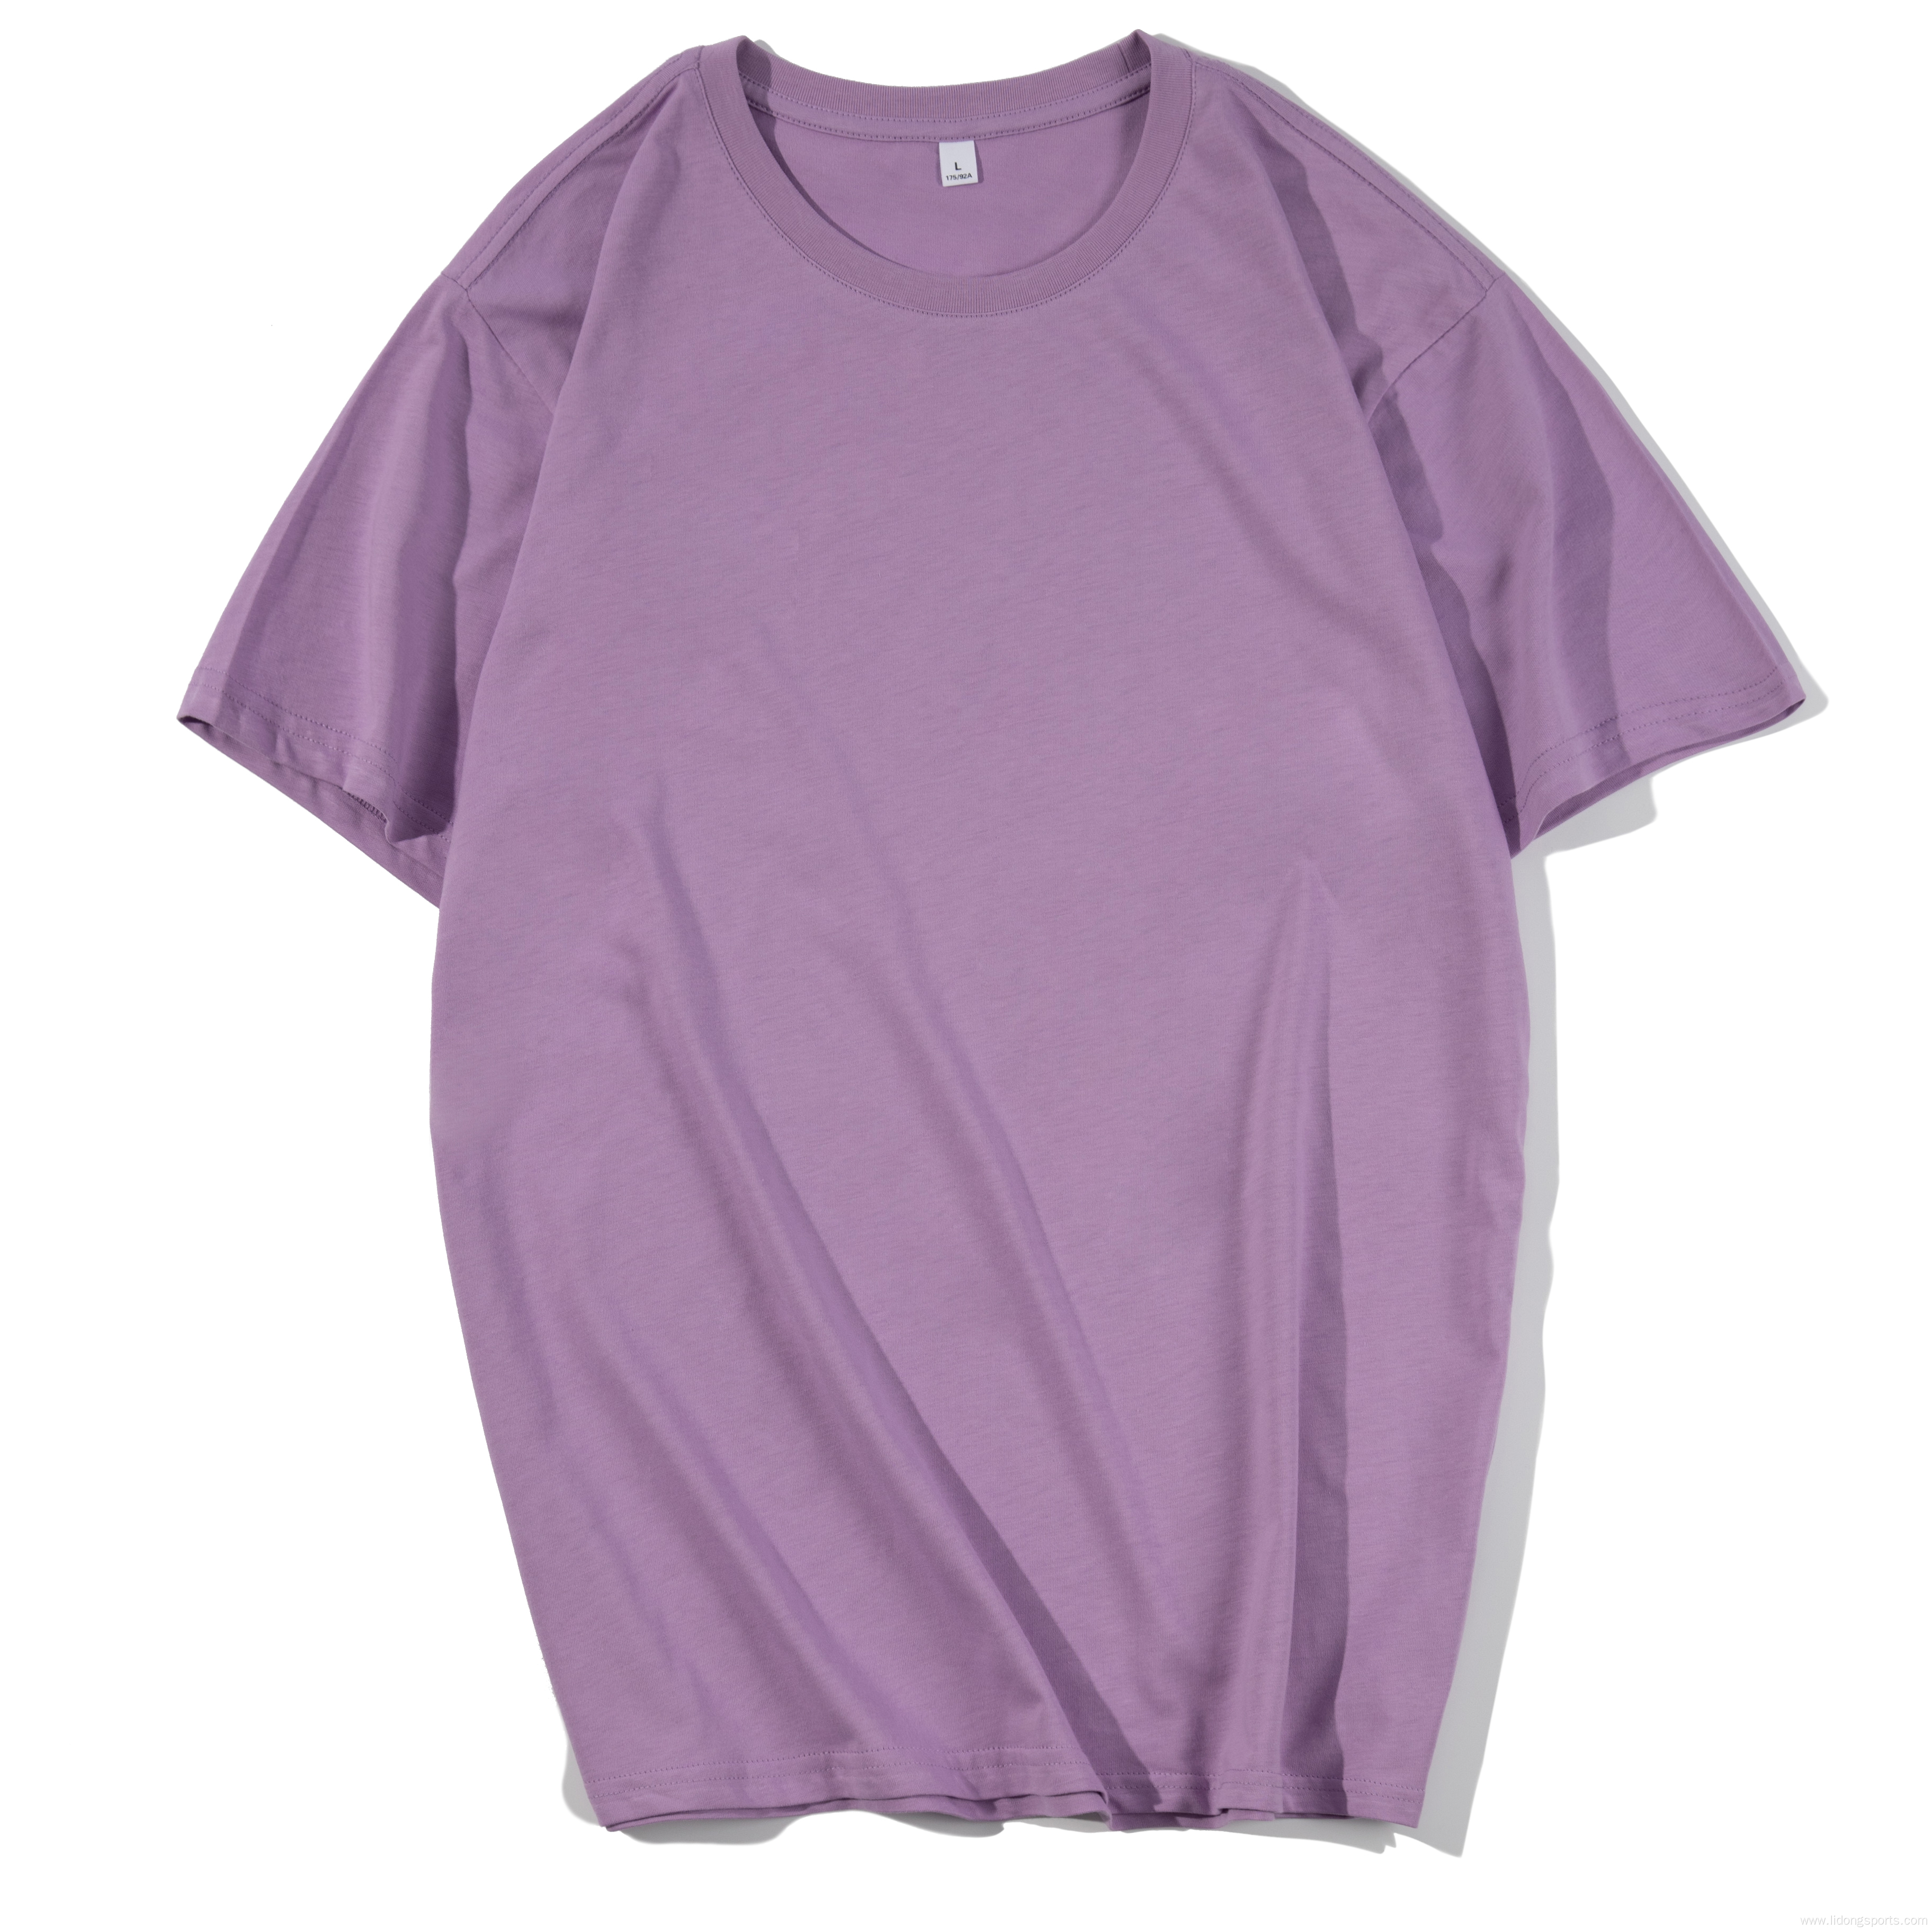 Men's T-shirt Unisex Plain 100% Cotton Oversized T-shirt